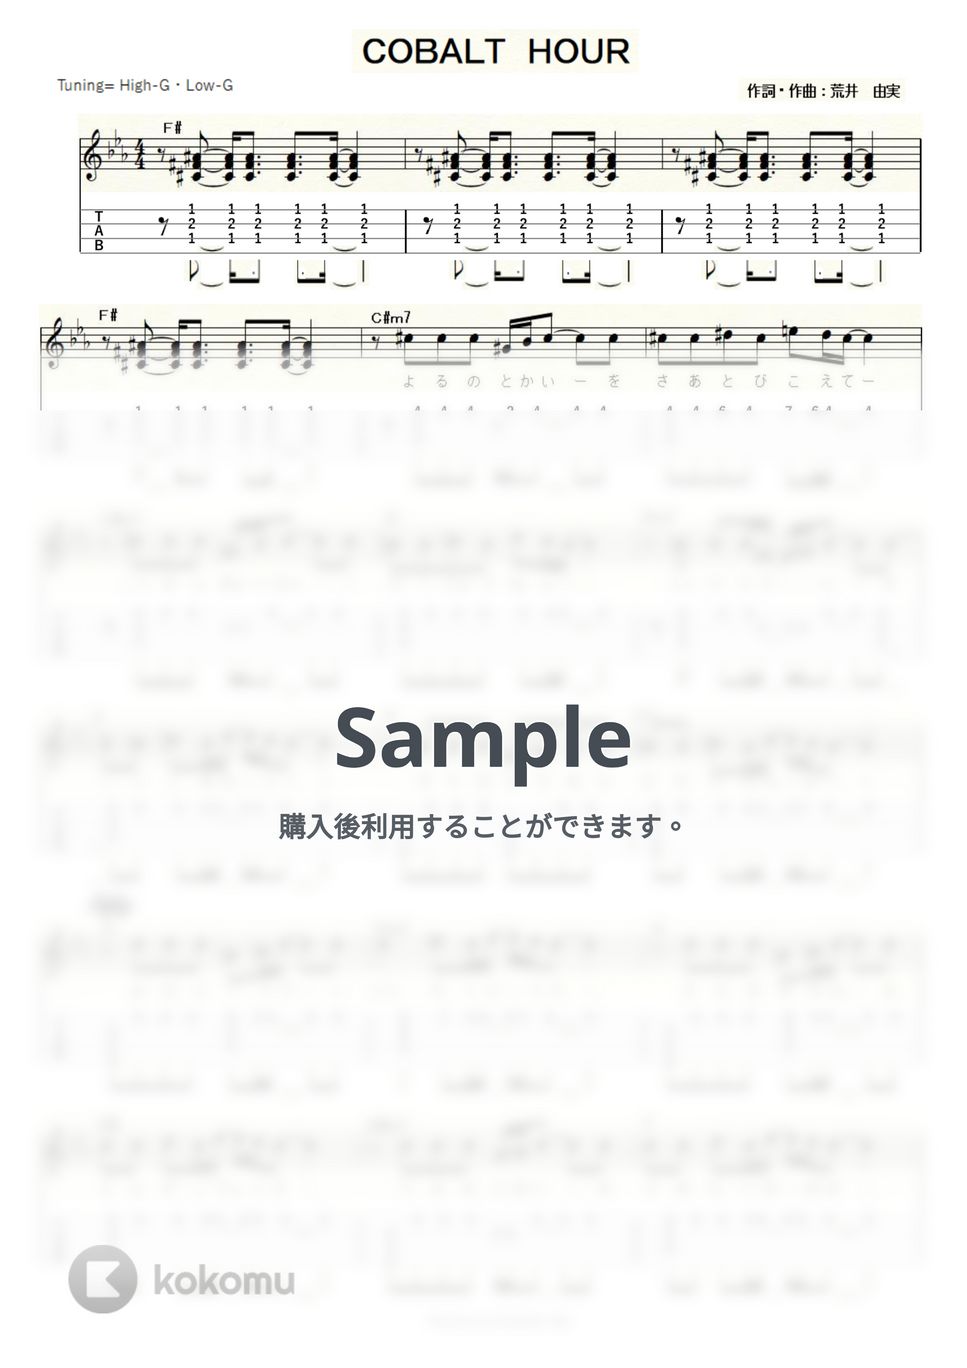 荒井 由実 - COBALT HOUR (ｳｸﾚﾚｿﾛ/High-G・Low-G/中級) by ukulelepapa